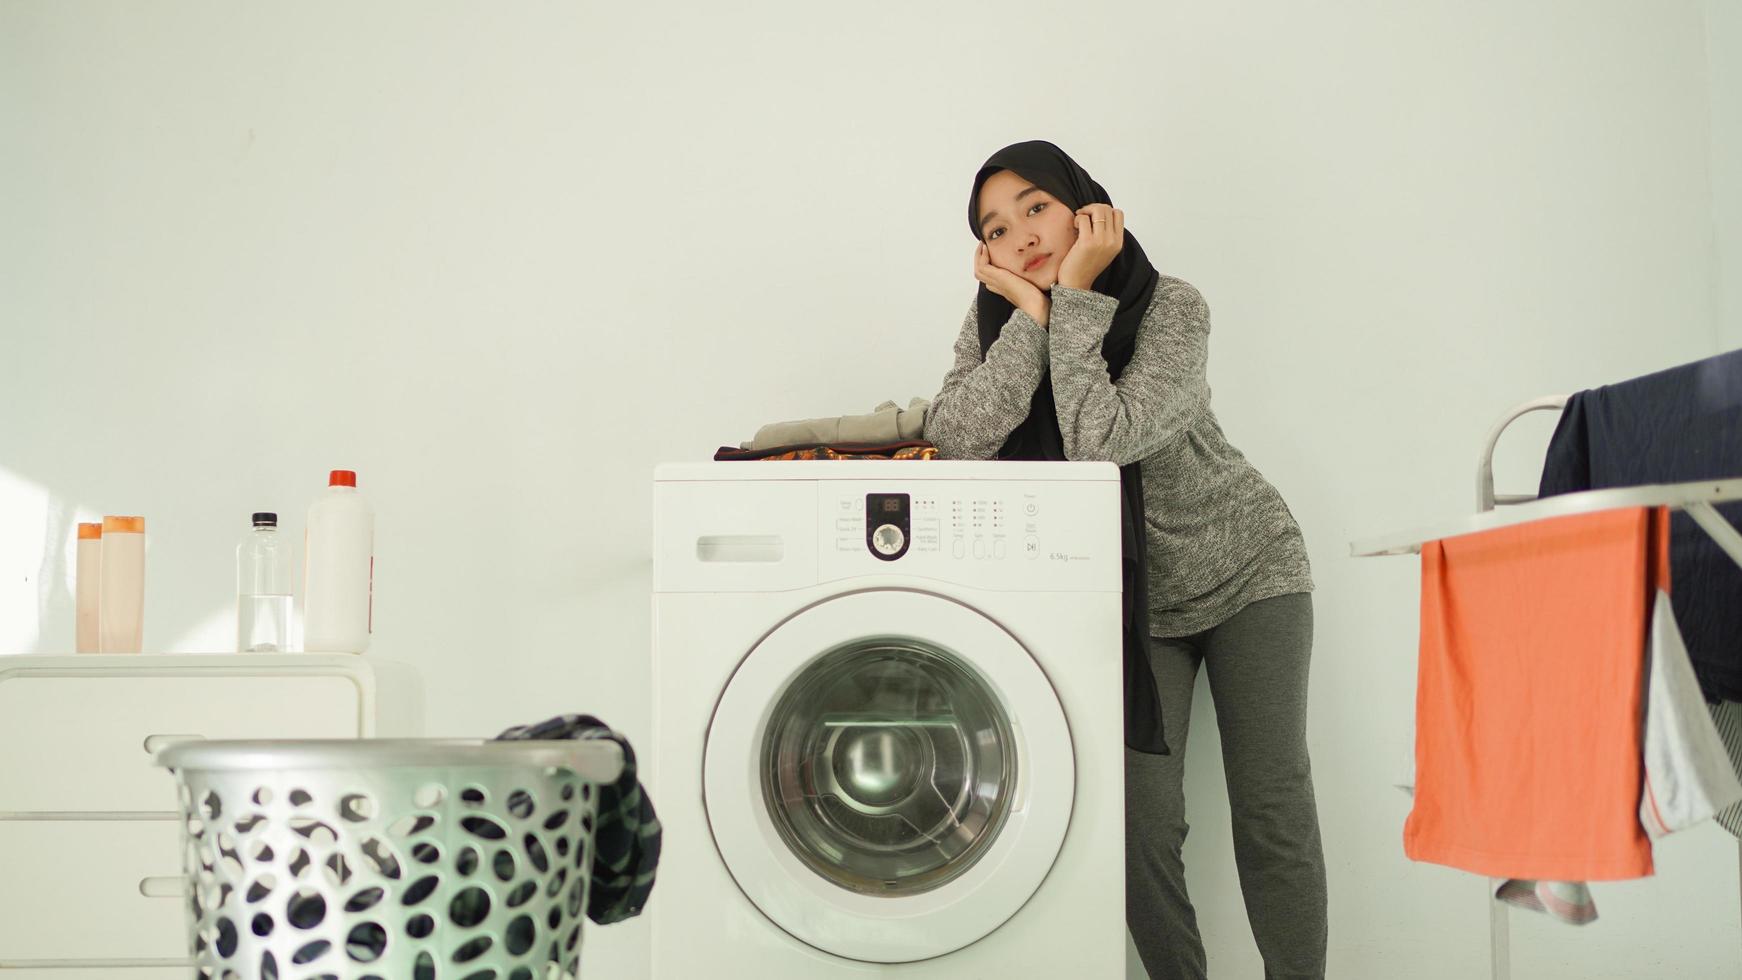 femme asiatique en hijab attendant que la machine à laver tourne à la maison photo